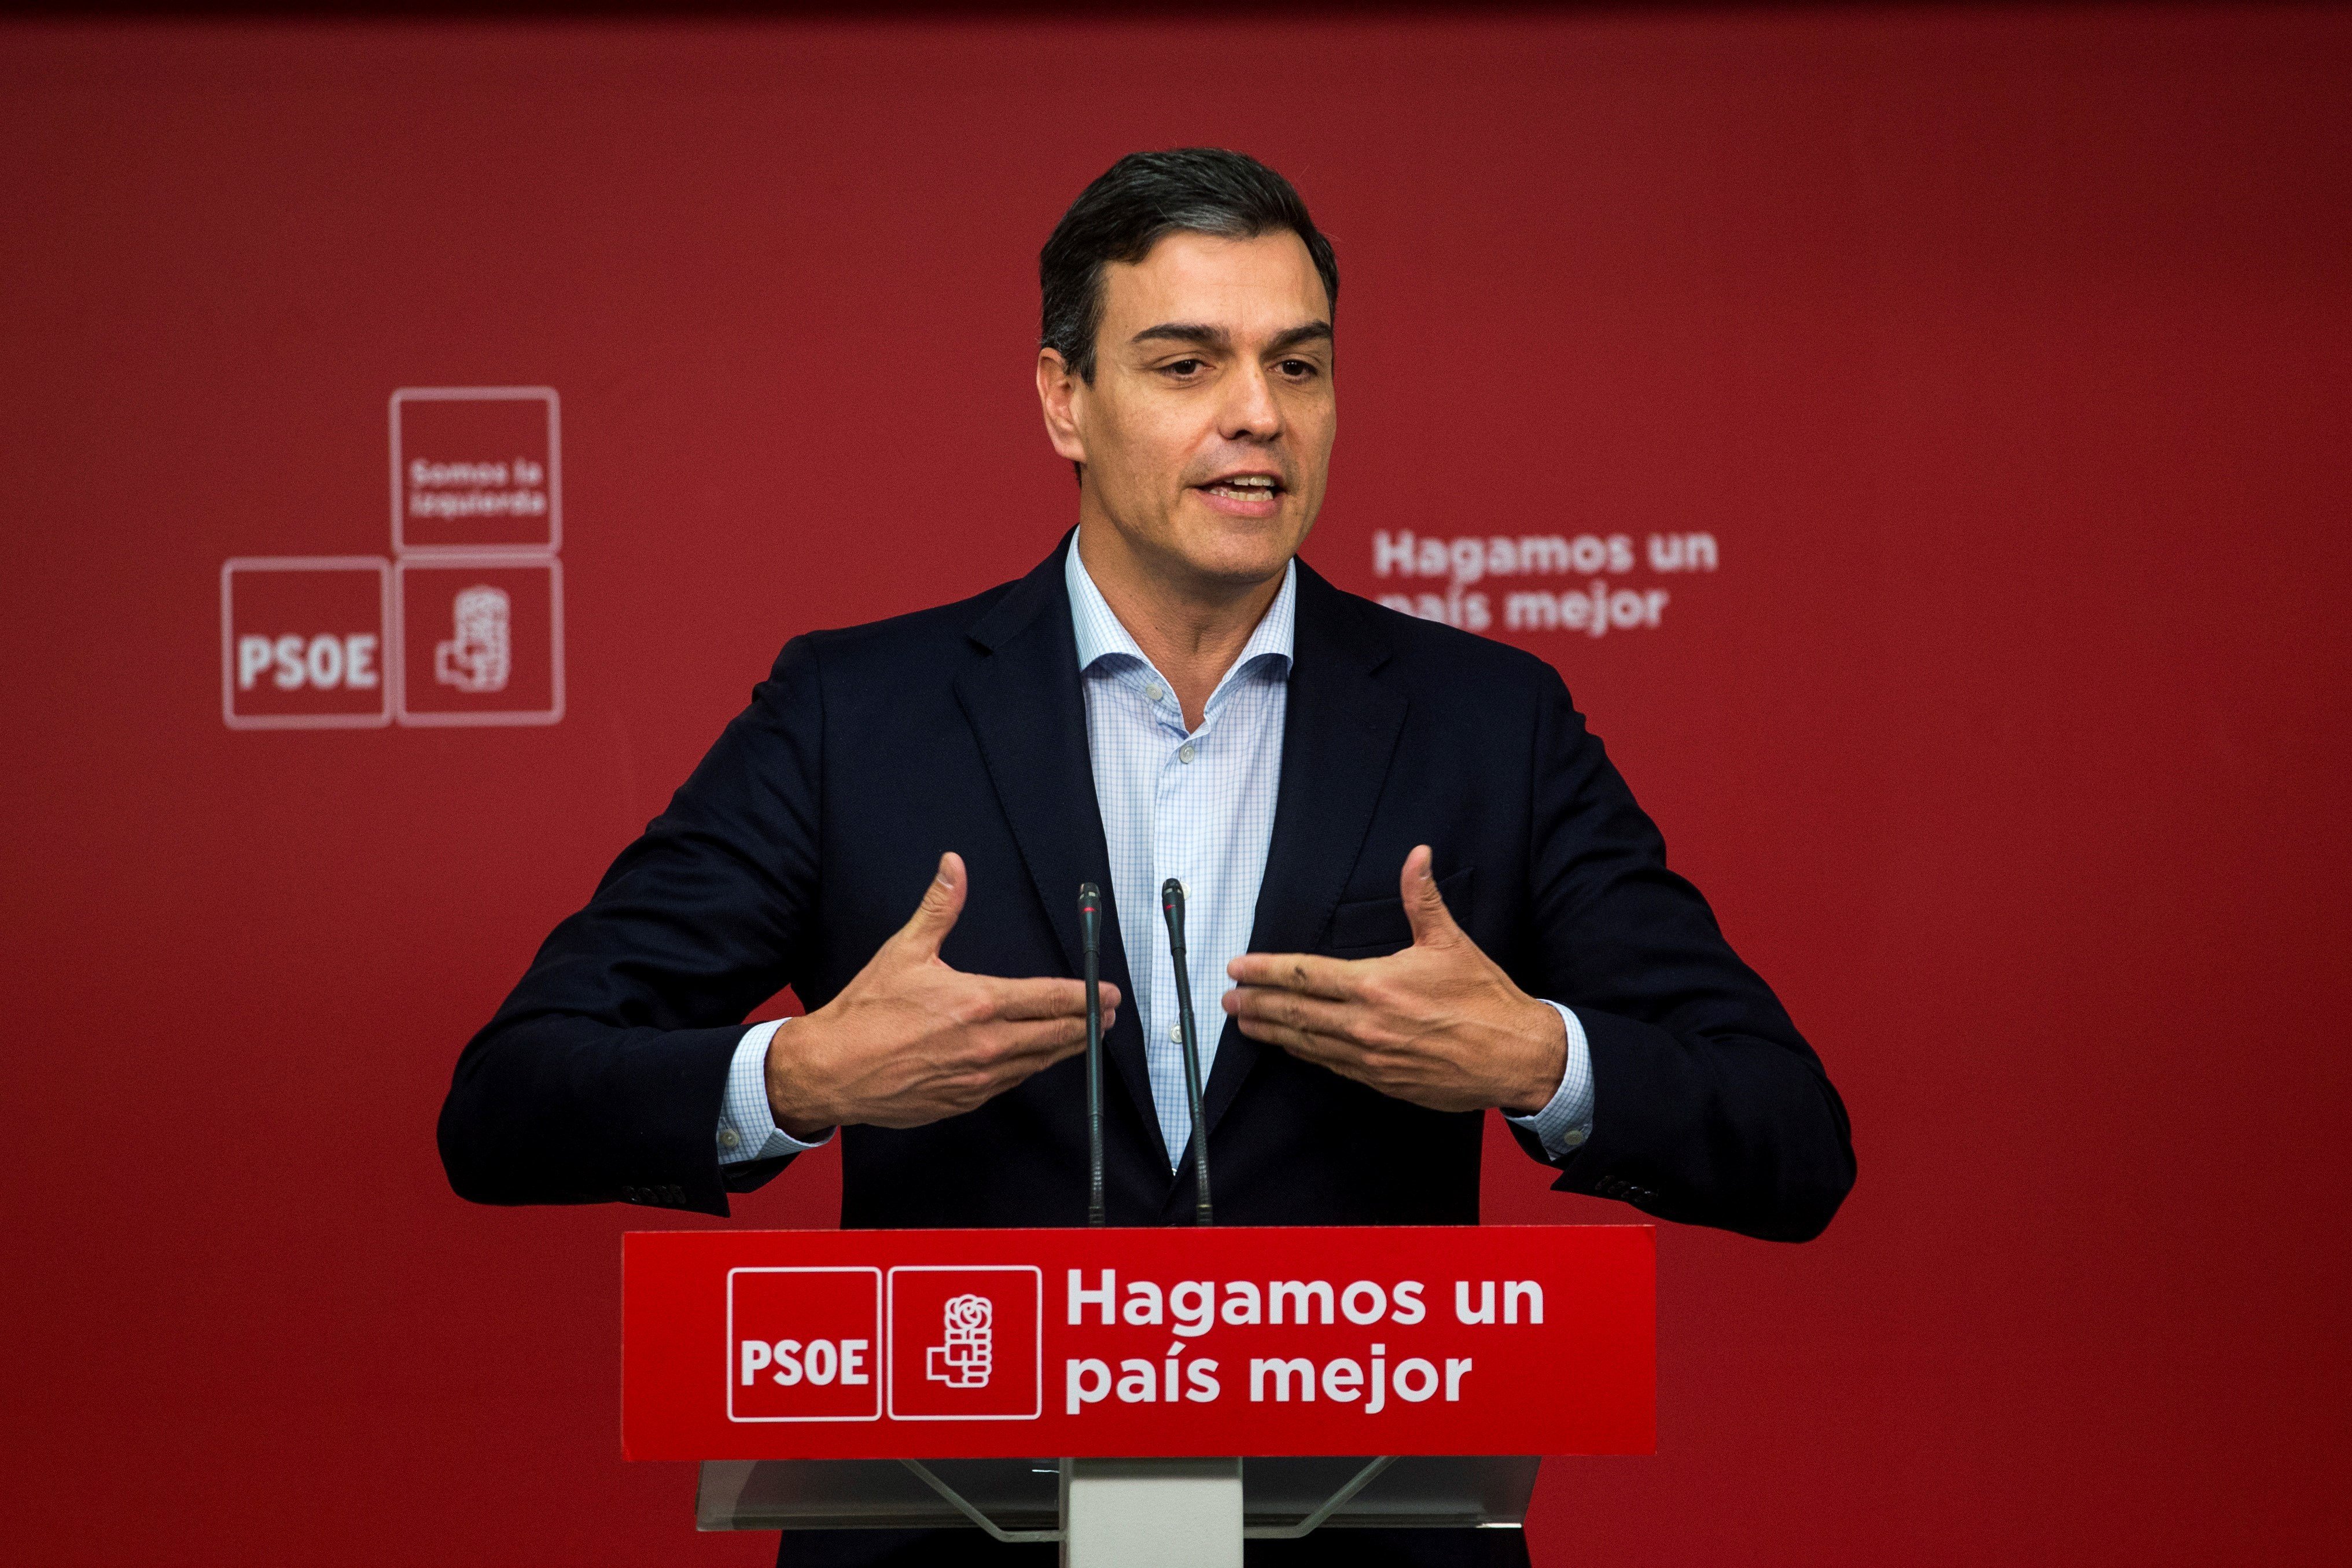 Pedro Sánchez compara Torra amb Vox i proposa sancionar polítics "racistes"